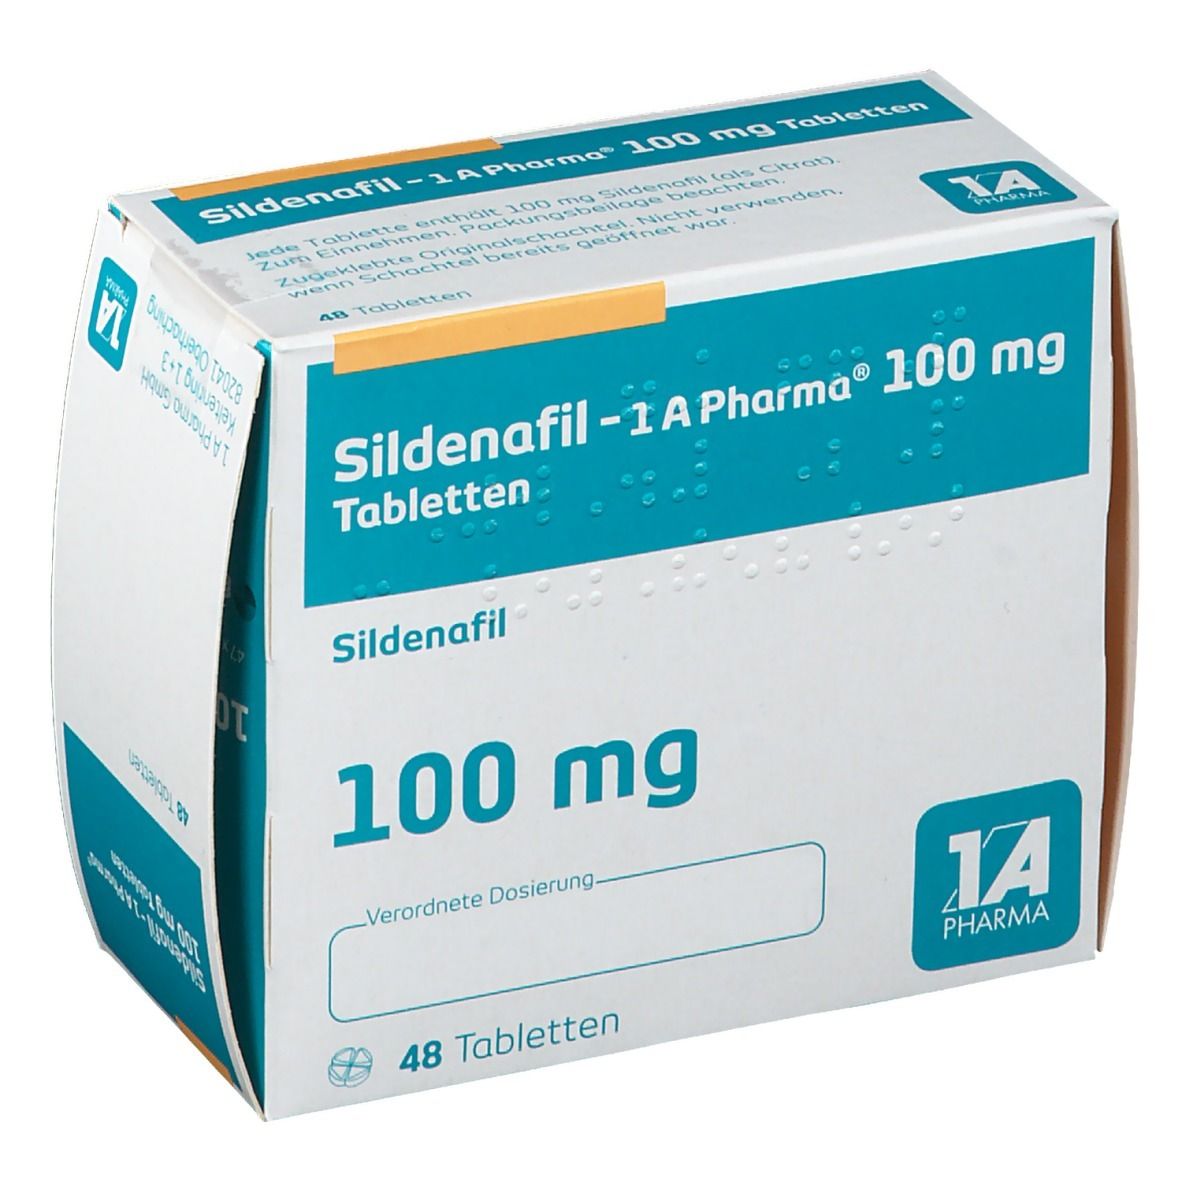 Sildenafil - 1 A Pharma® 100 mg